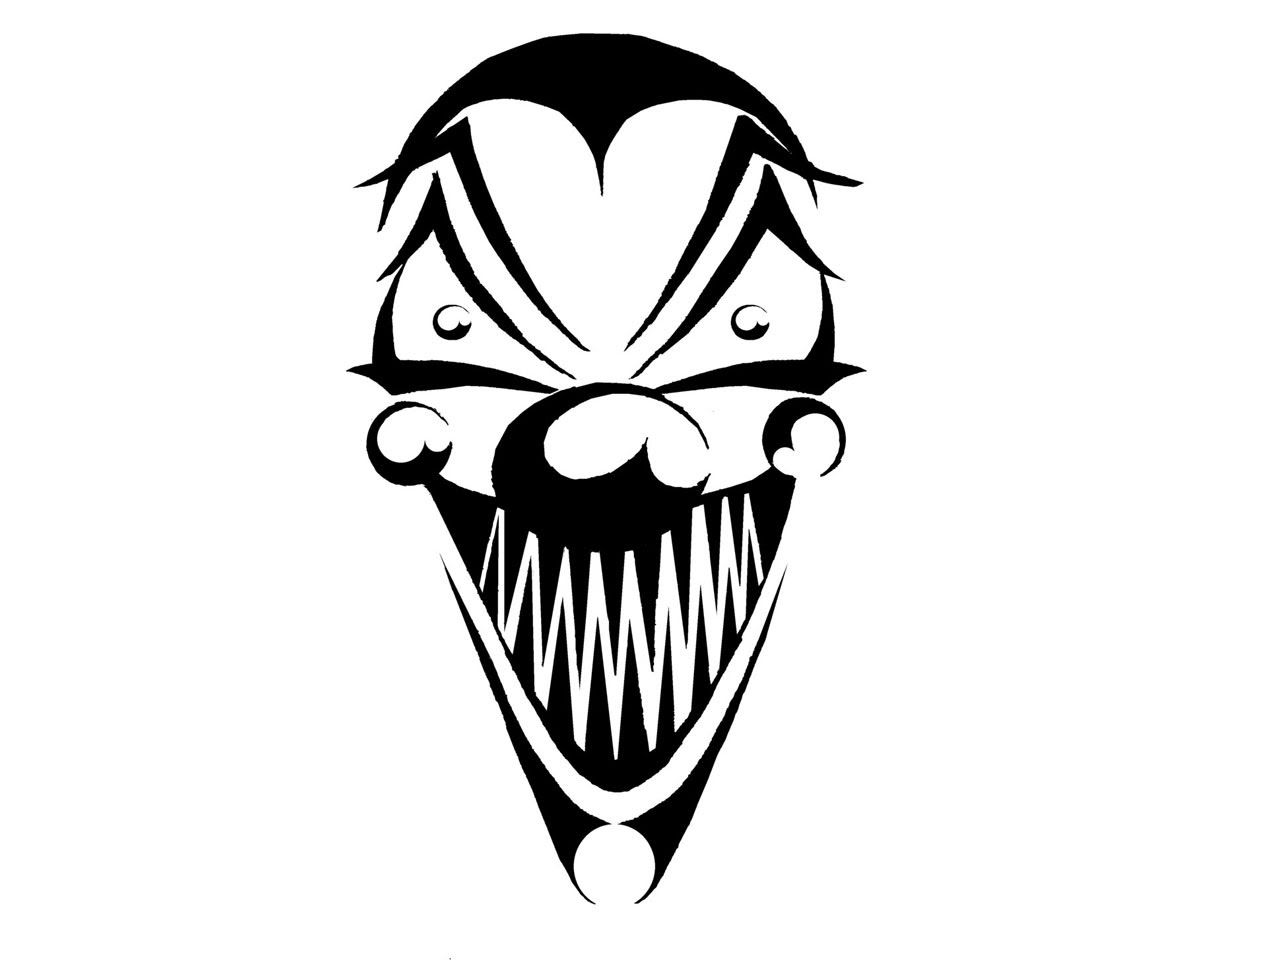 4. Joker Inspired Temporary Tattoos - wide 11